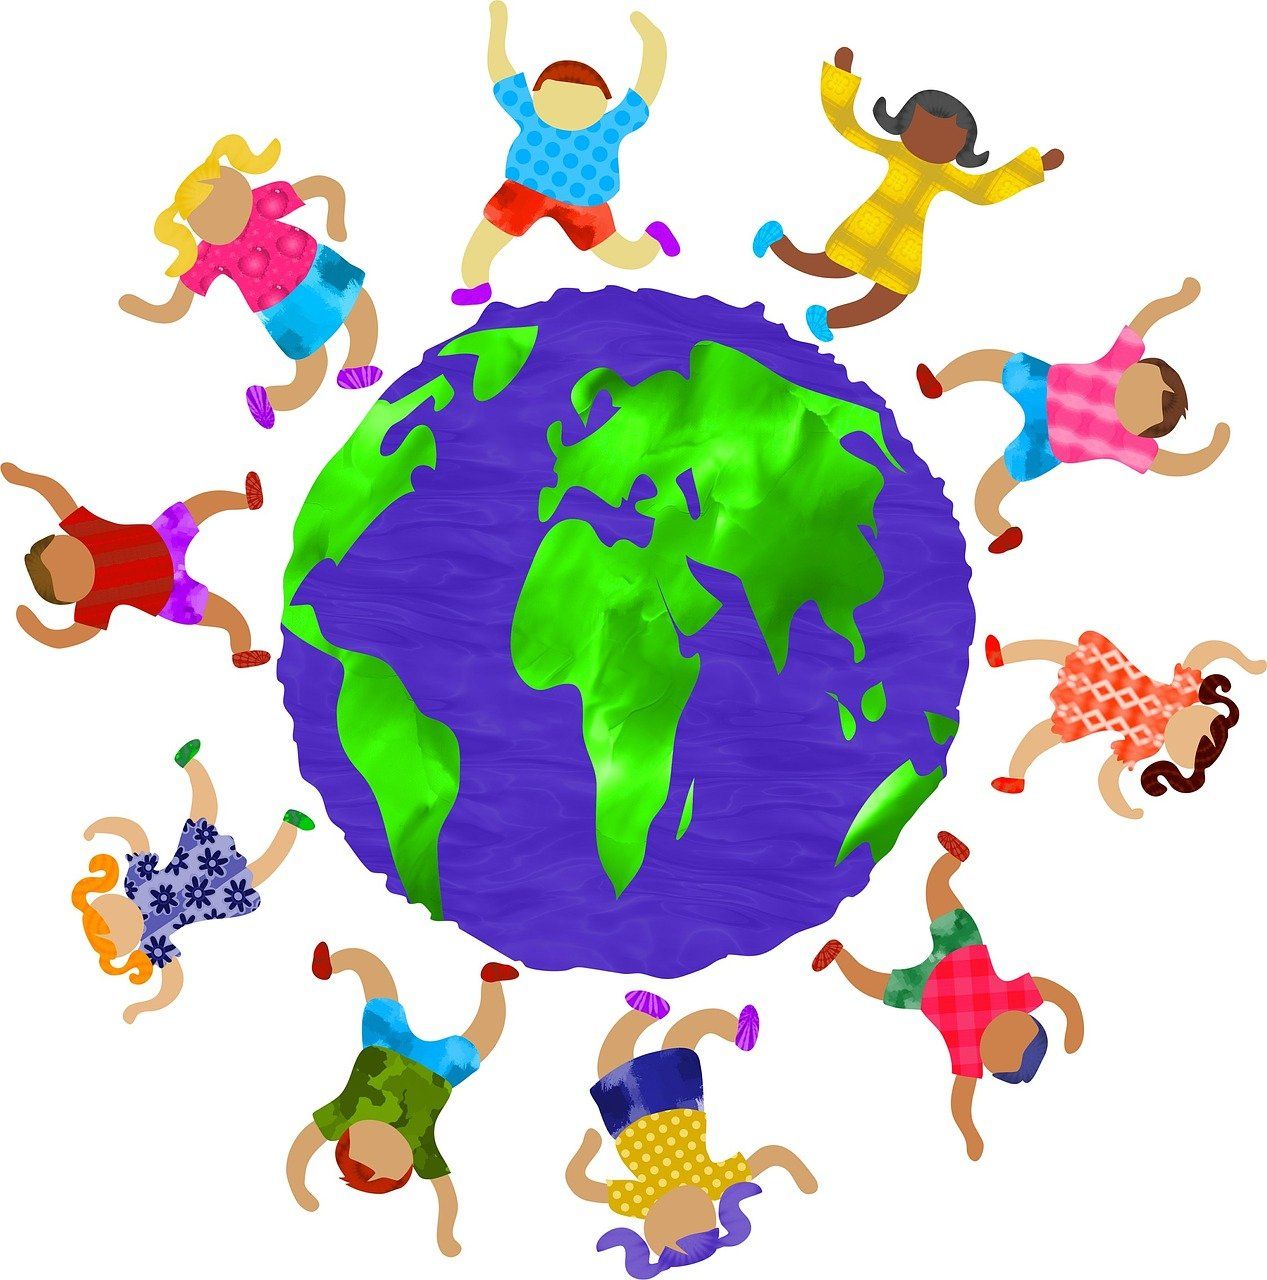 Kinder aus verschiedenen Nationen tanzen um eine Weltkugel.